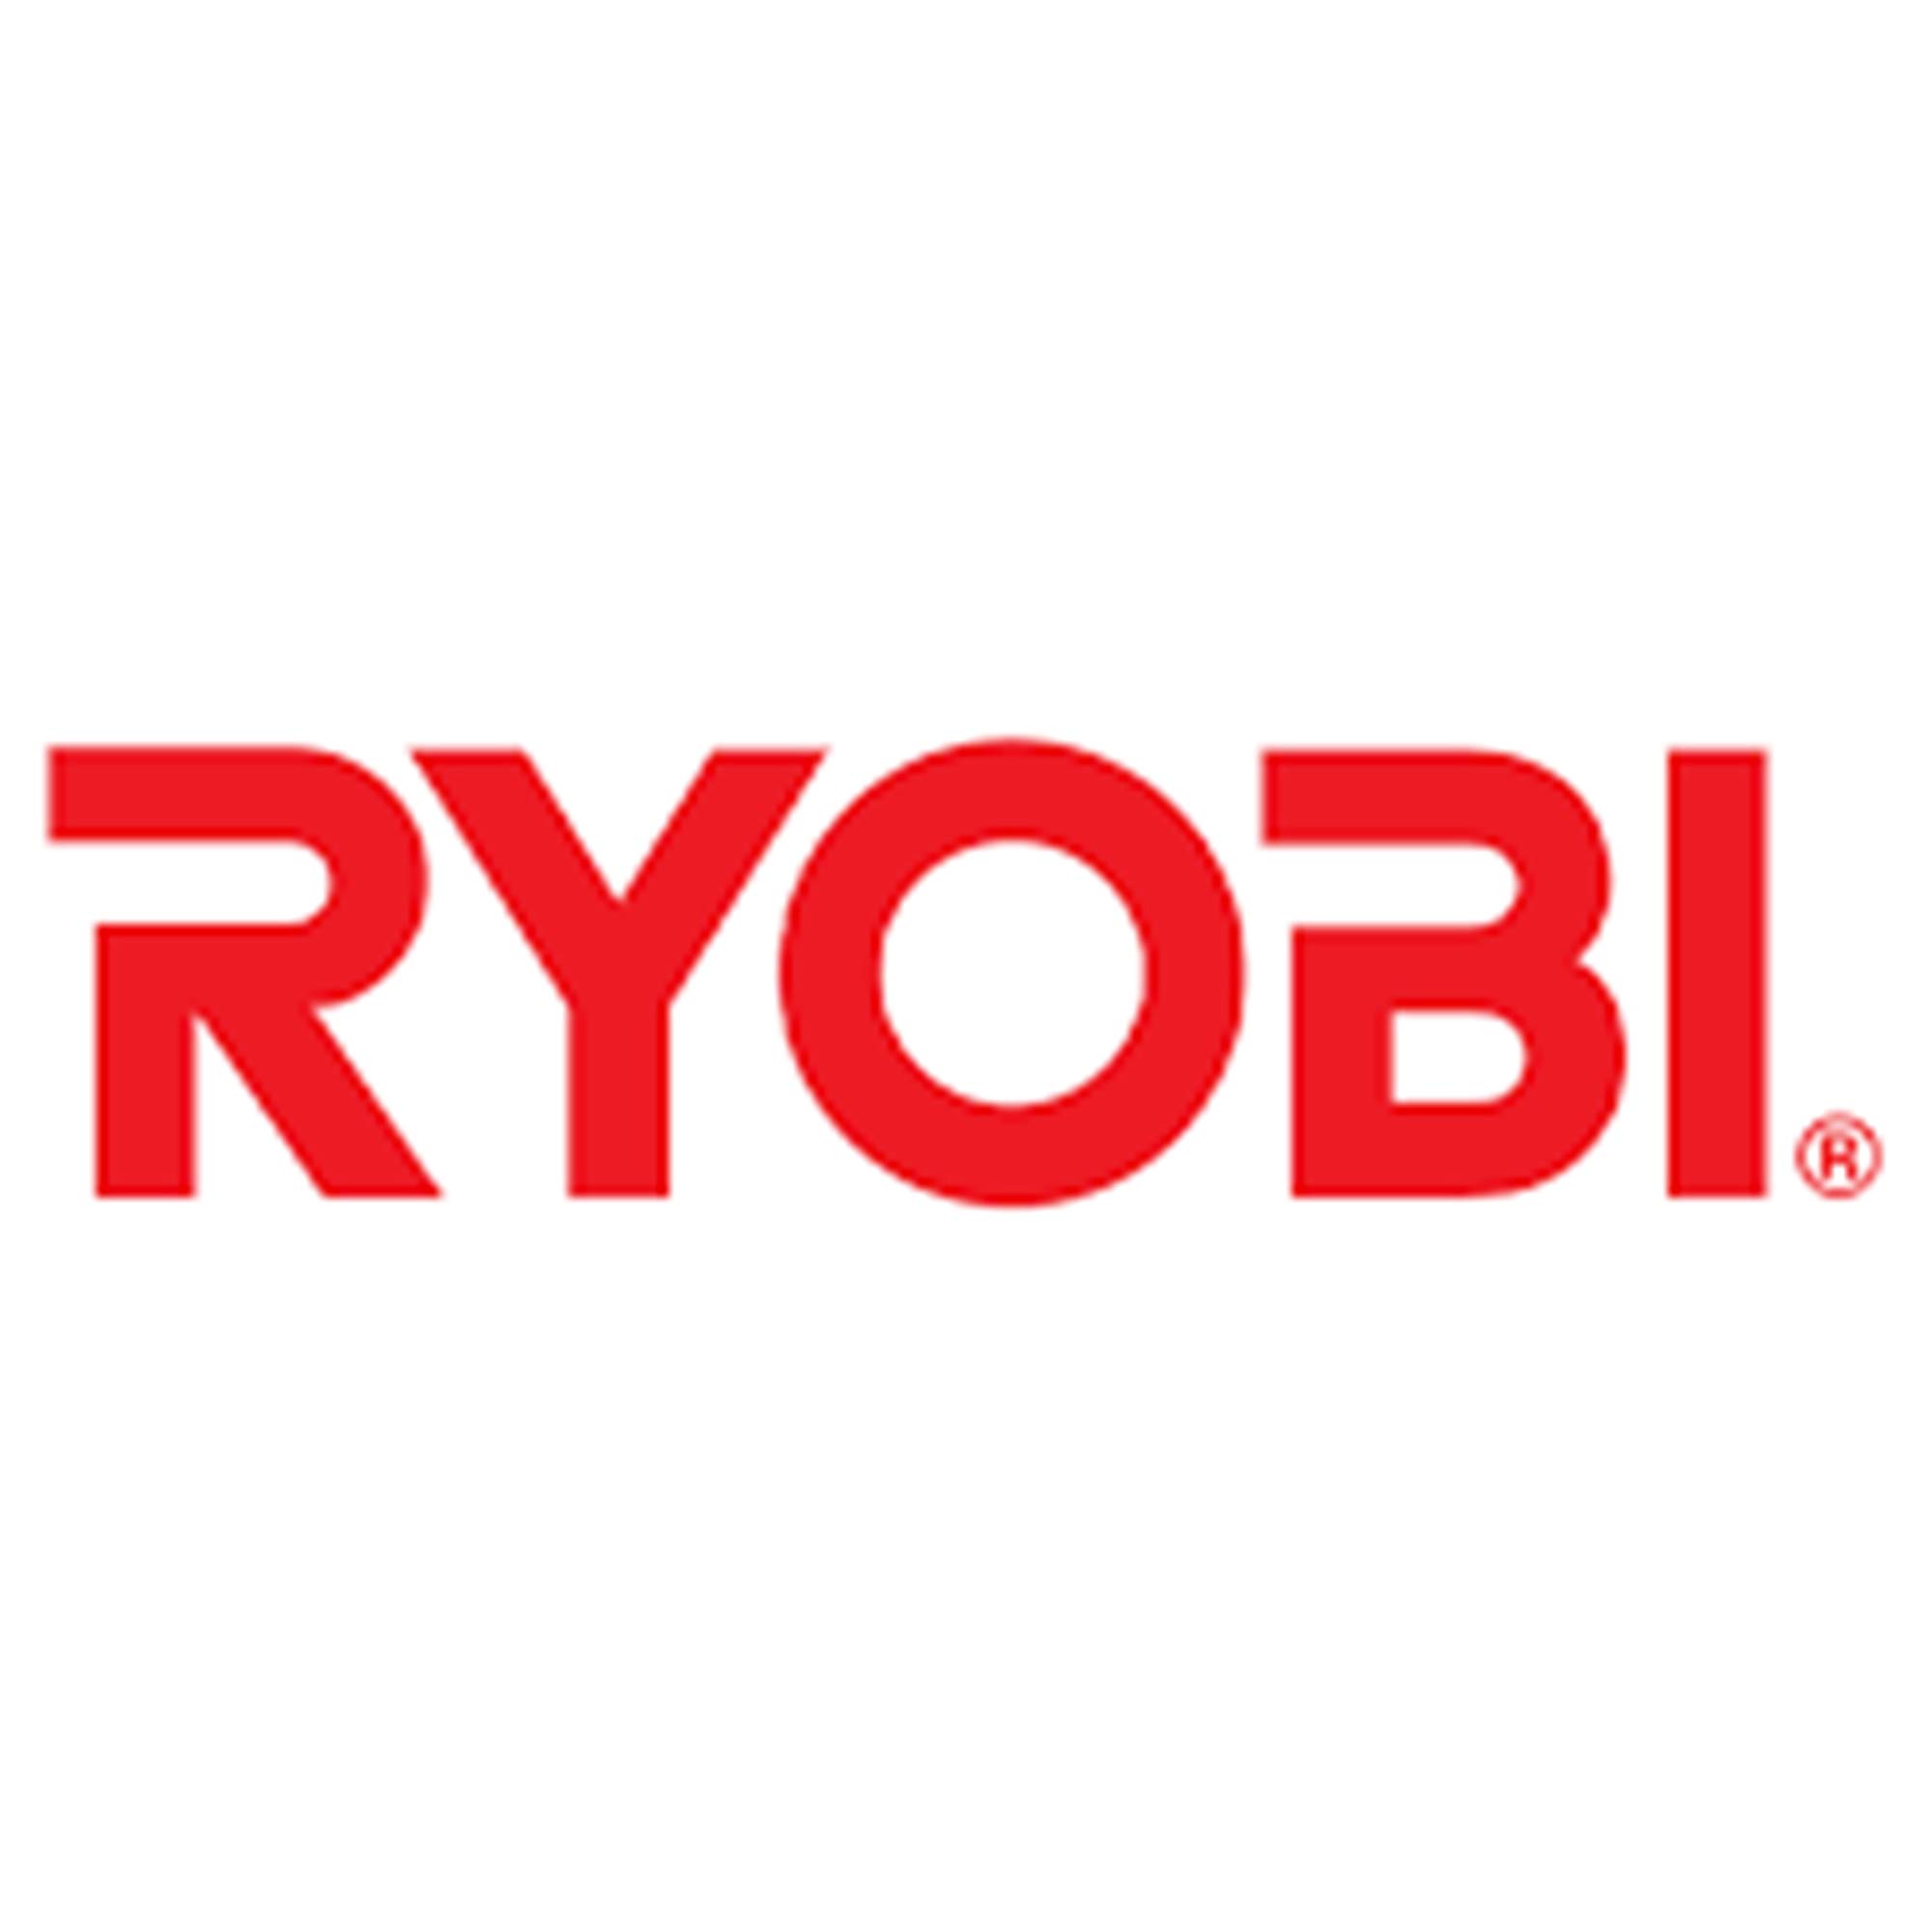 Ryobi 791050000 Miter Saw Allen Wrench, 5-mm Genuine Original Equipment Manufacturer (OEM) Part